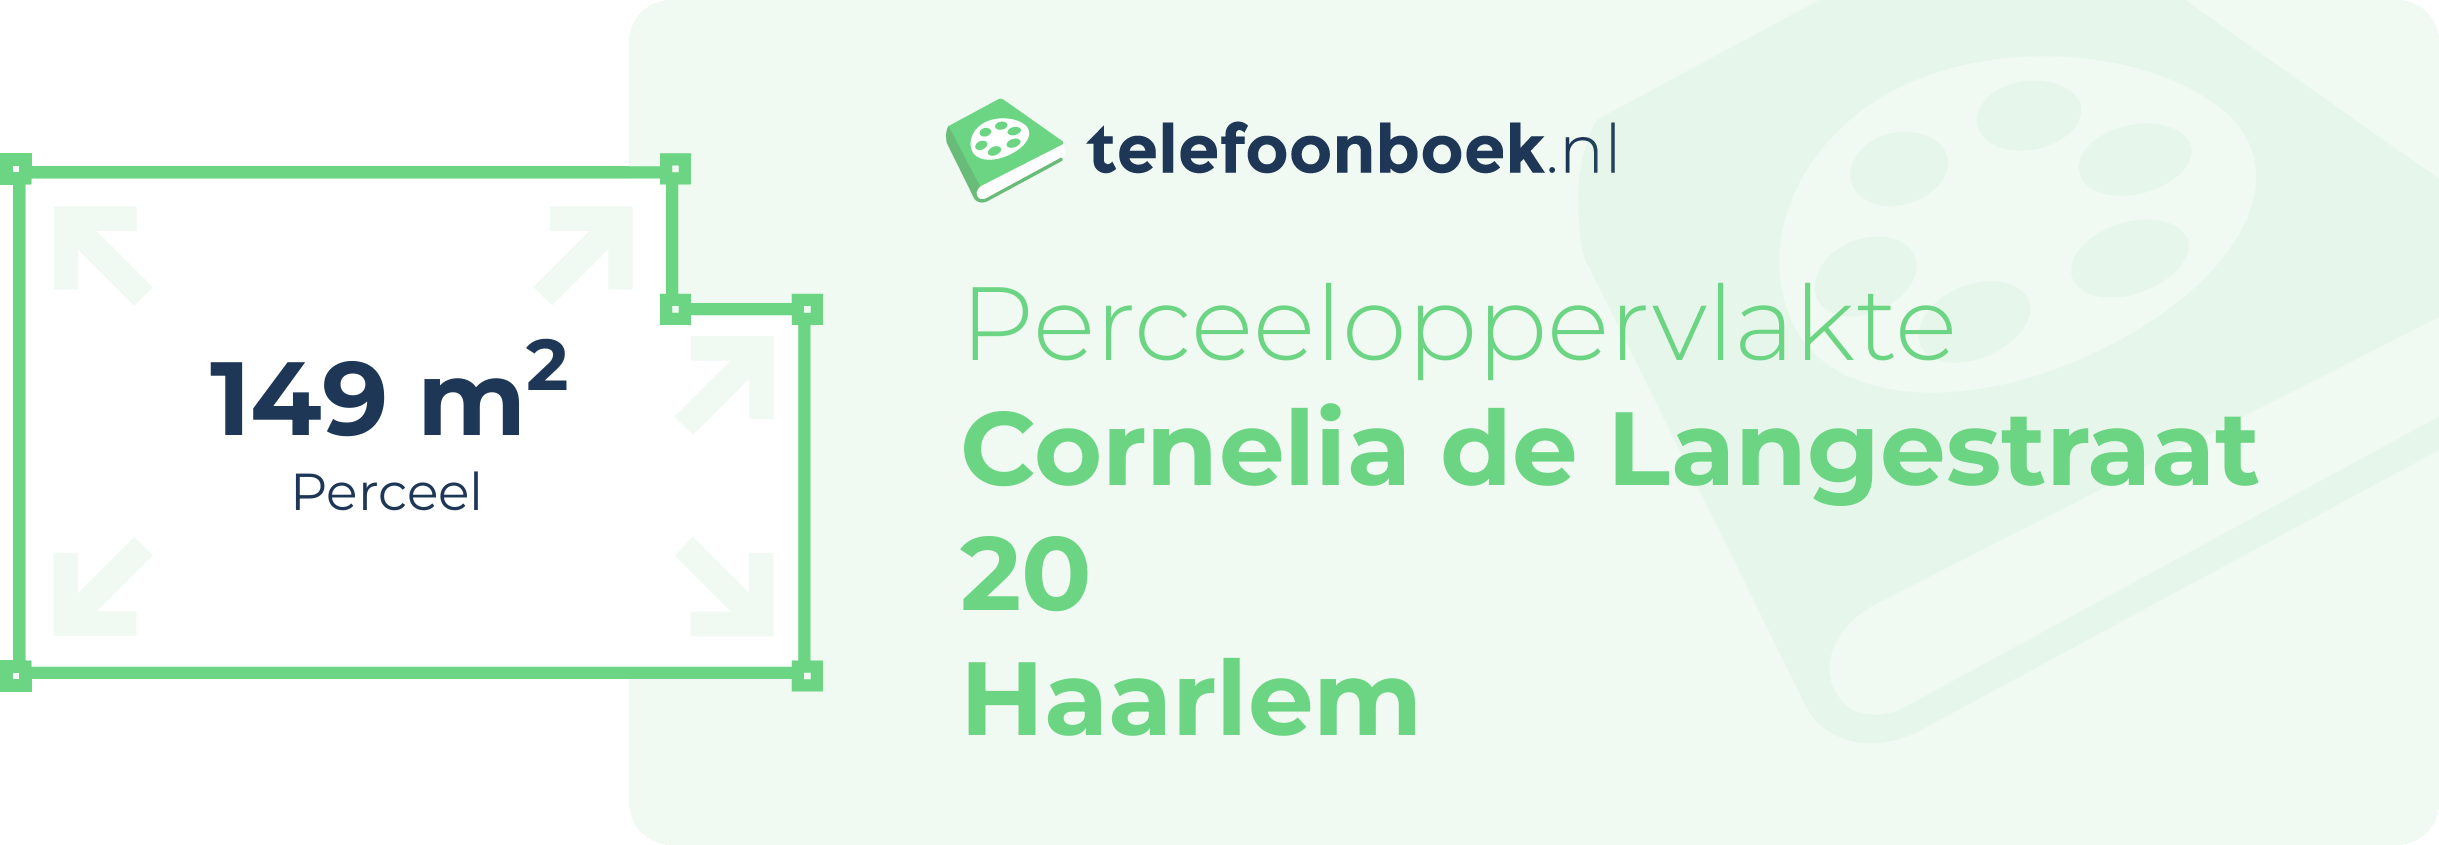 Perceeloppervlakte Cornelia De Langestraat 20 Haarlem